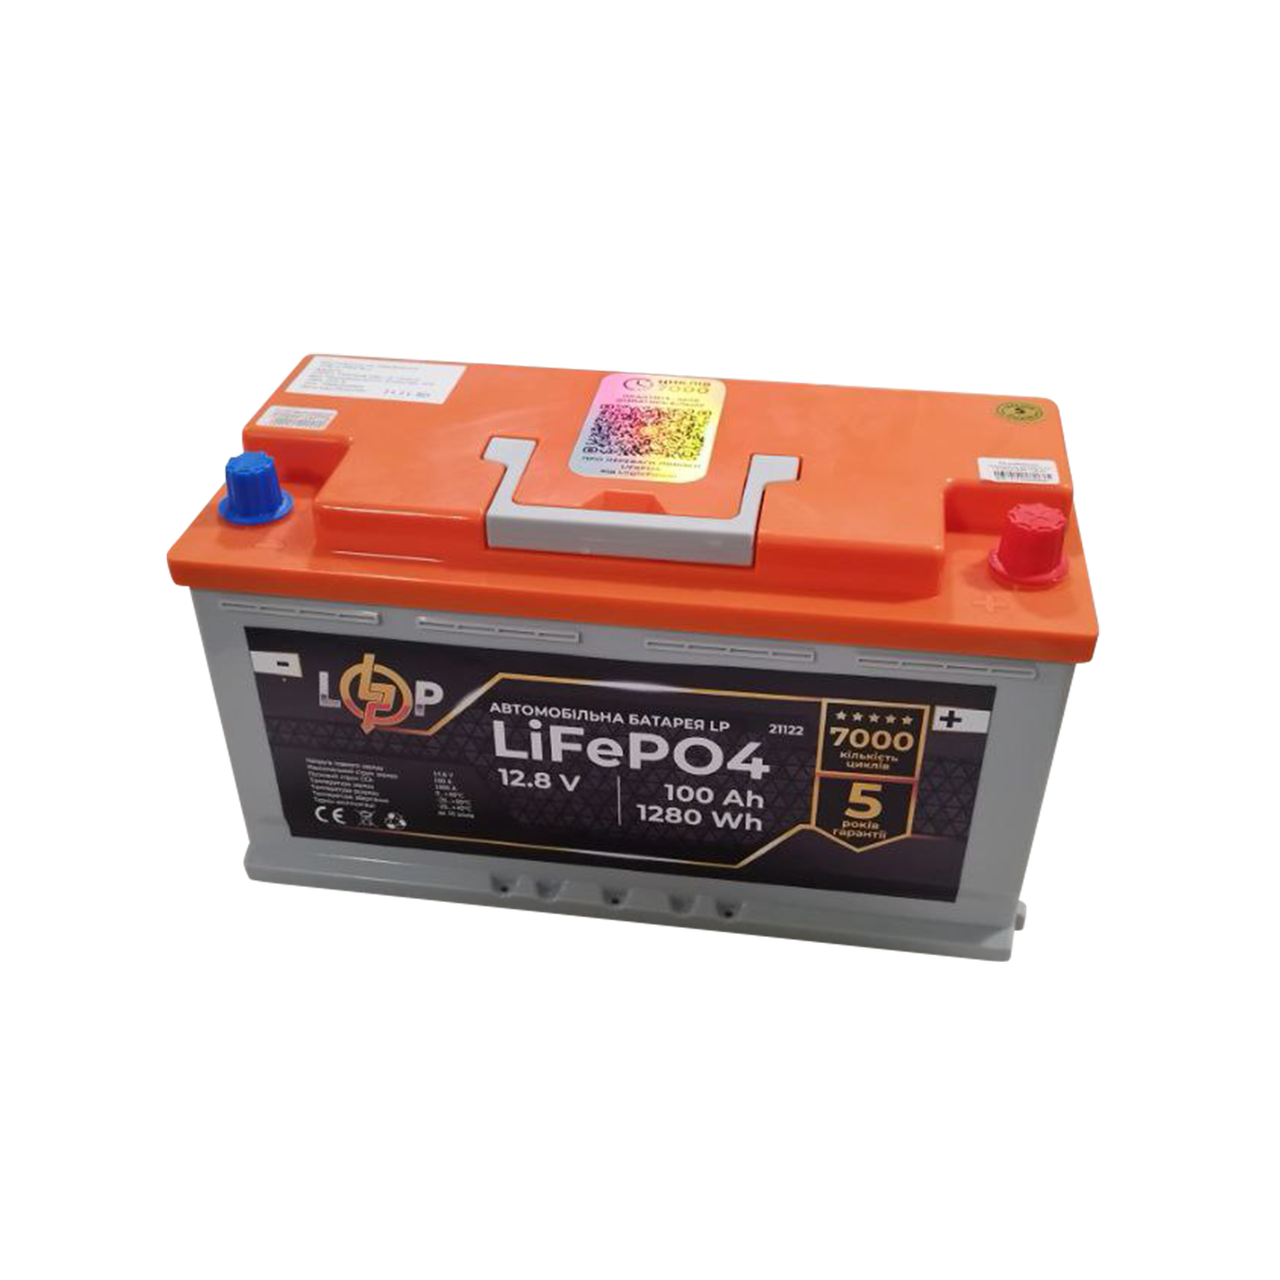 Акумулятор для автомобіля літієвий LP LiFePO4 (+ праворуч) 12,8V - 100 Ah (1280Wh)